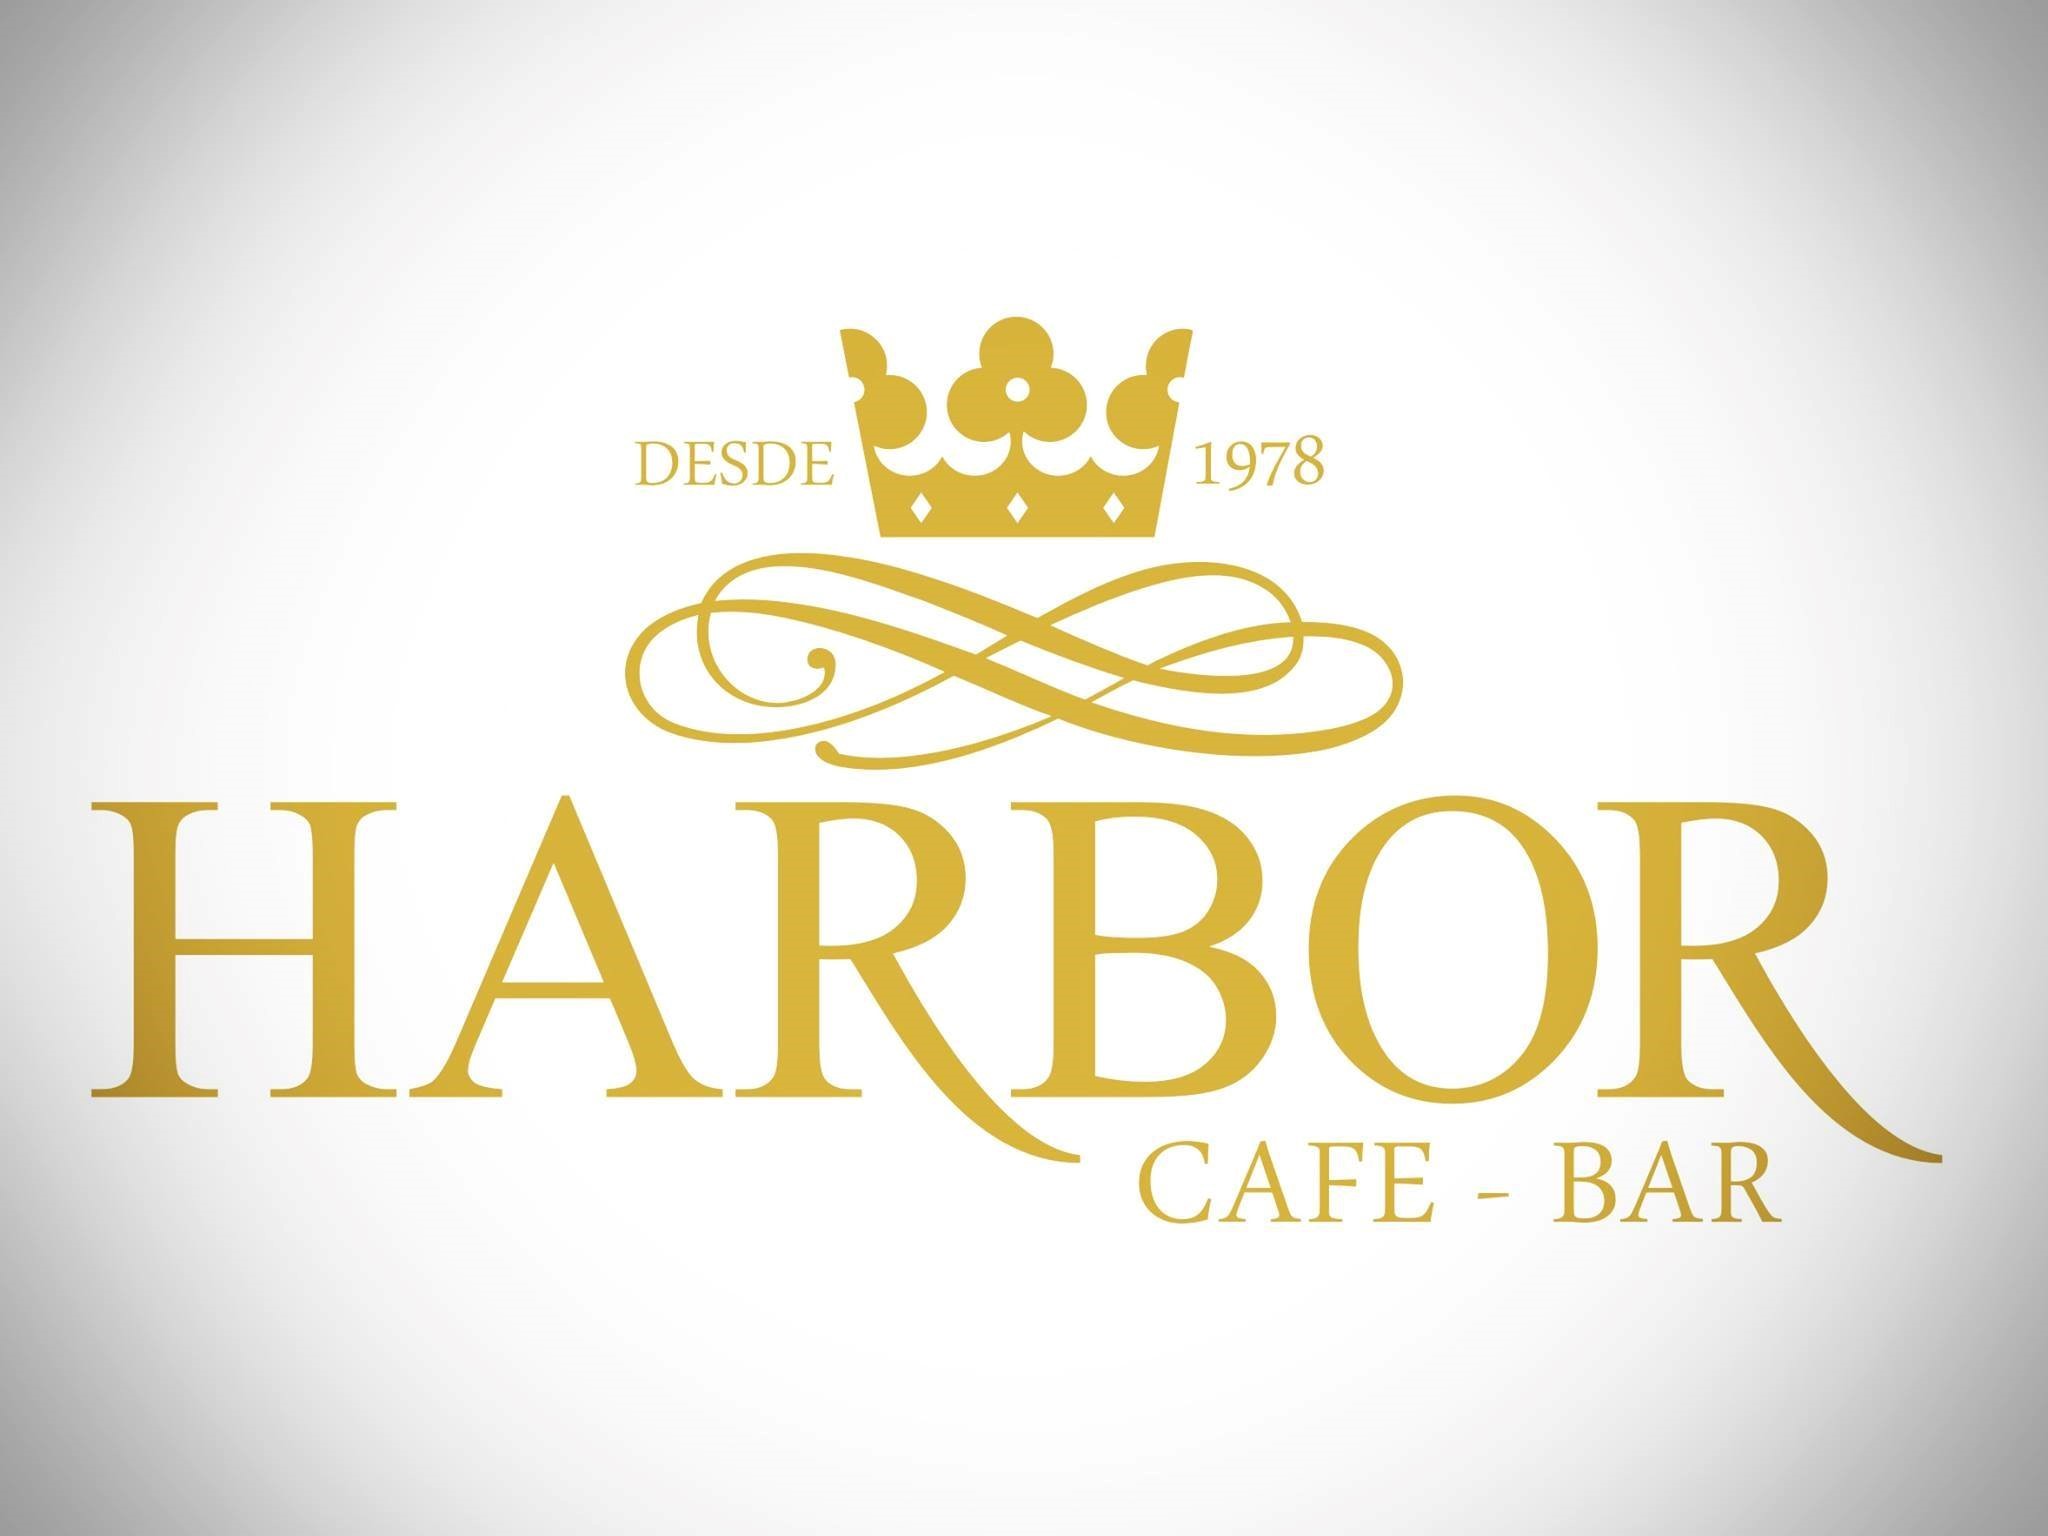 Harbor Café Bar